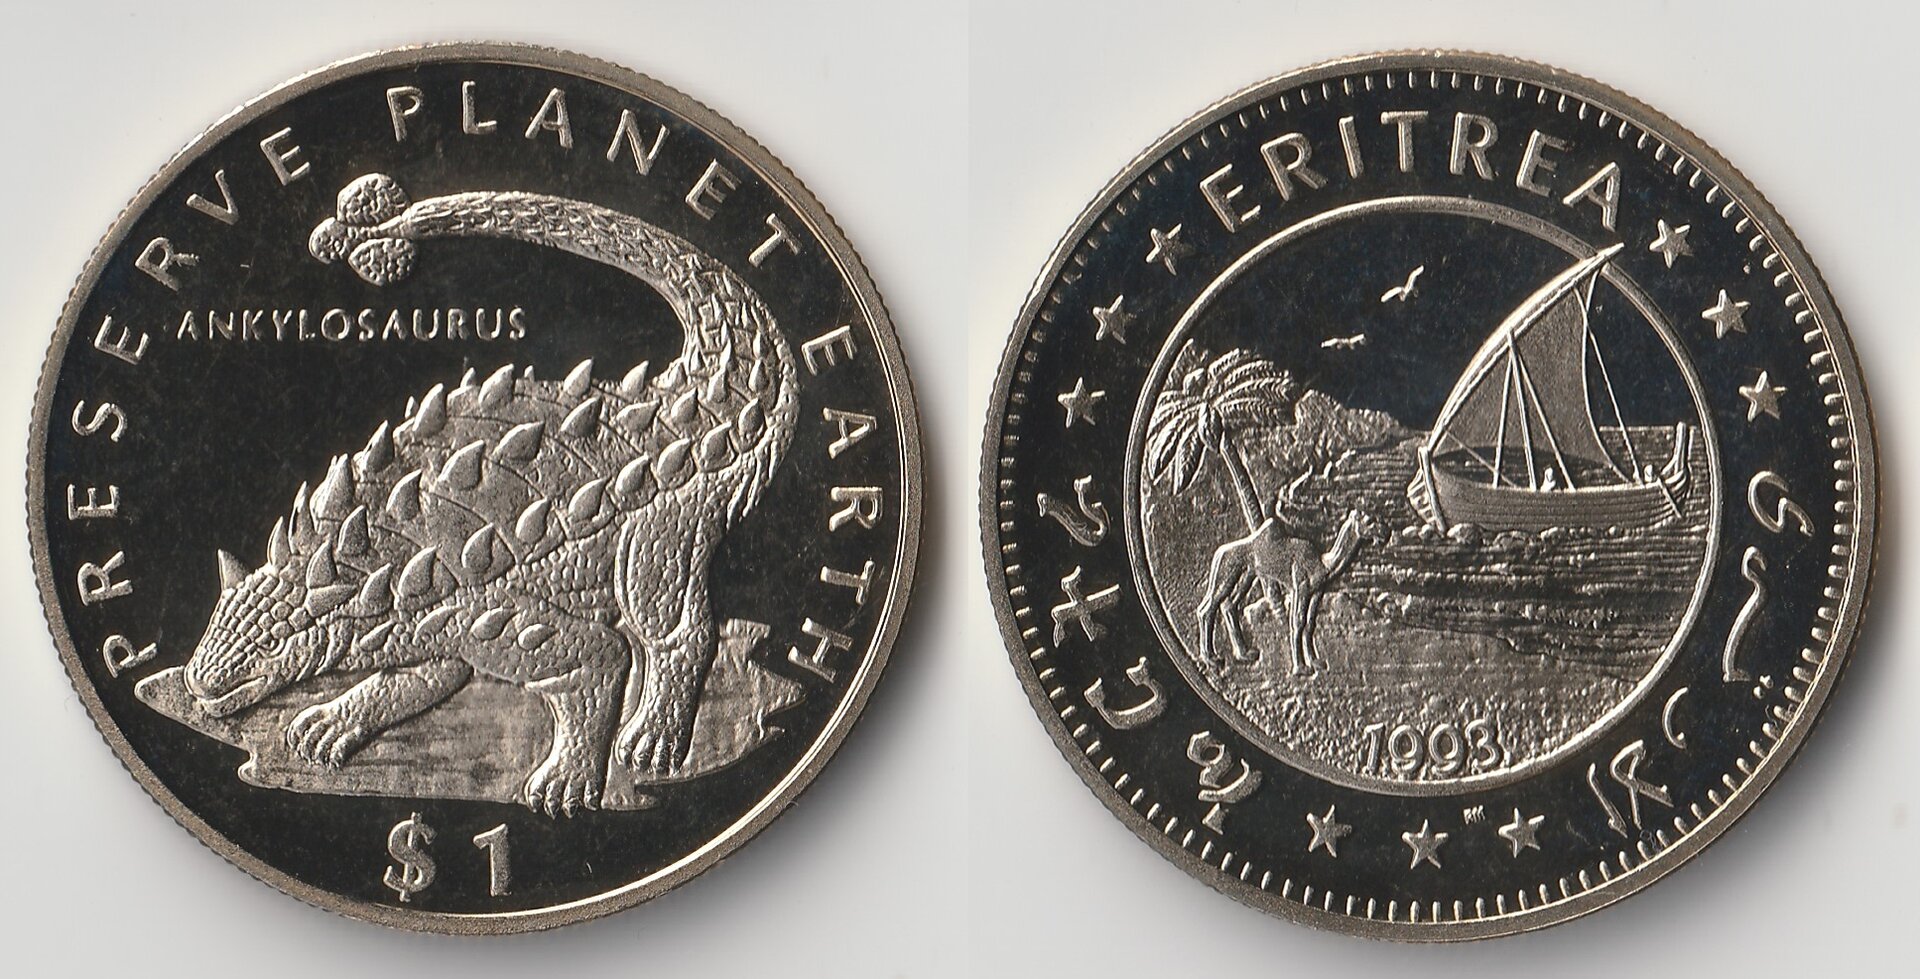 1993 eritrea 1 dollar ankylosaurus.jpg